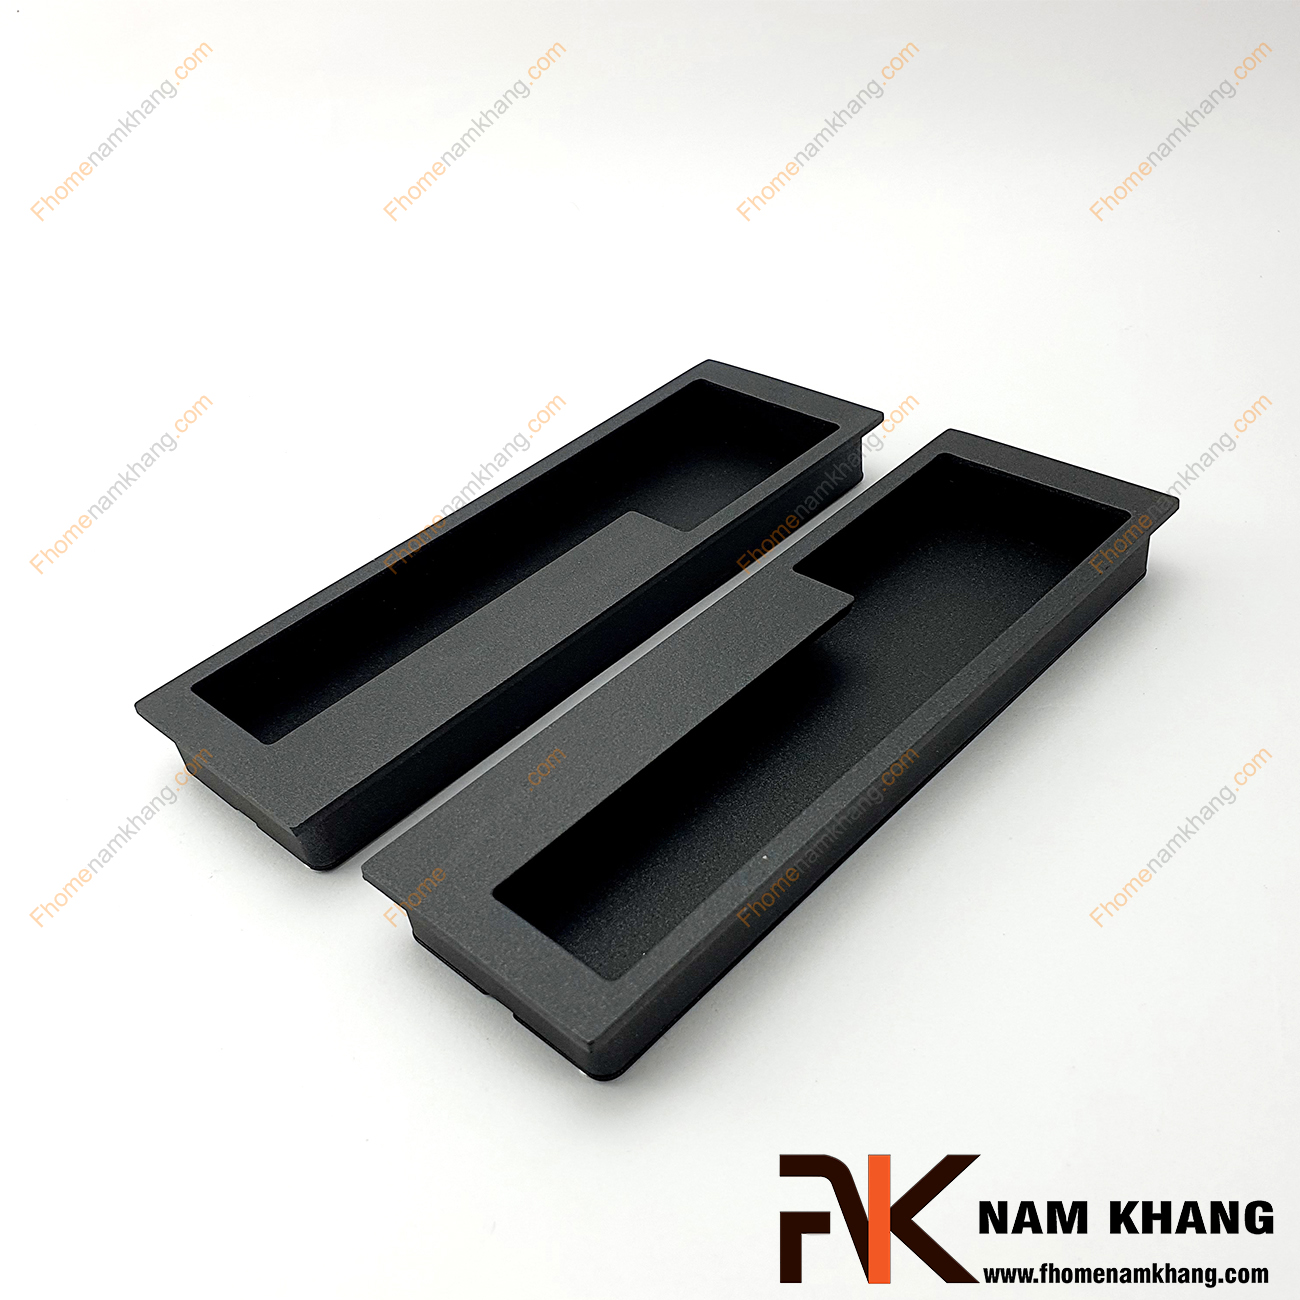 Tay nắm âm tủ màu đen NK438-128D là loại tay nắm chuyên dùng cho các loại tủ đặt ở những nơi có không gian hạn chế hoặc dùng để nâng cao tính thẫm mỹ của sản phẩm